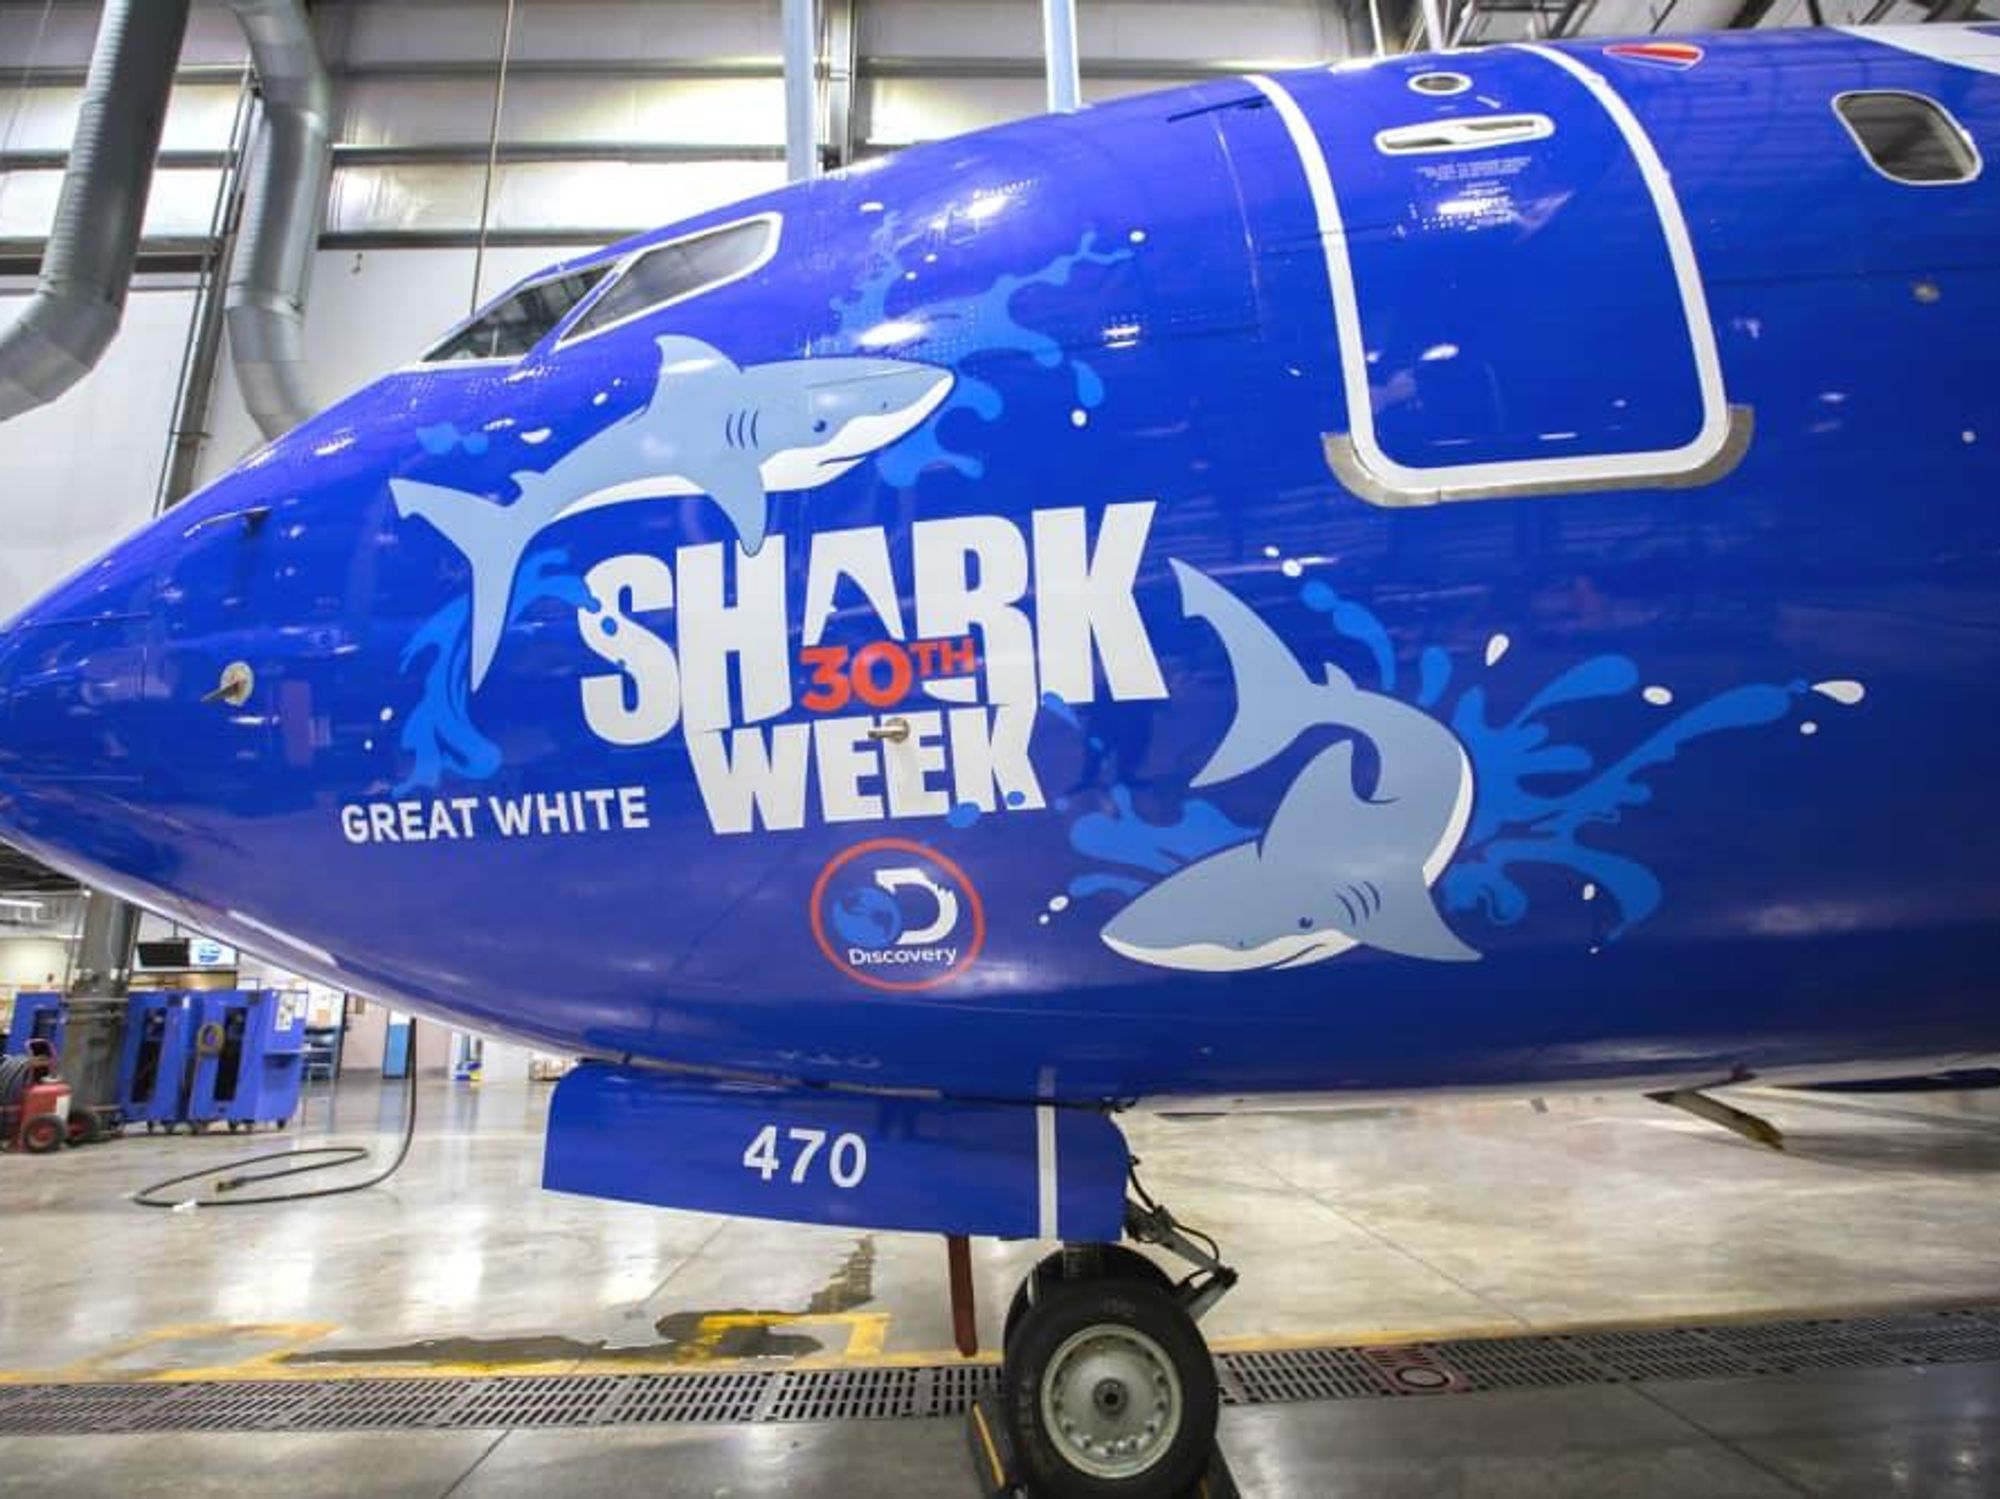 Southwest Airlines Shark Week jets